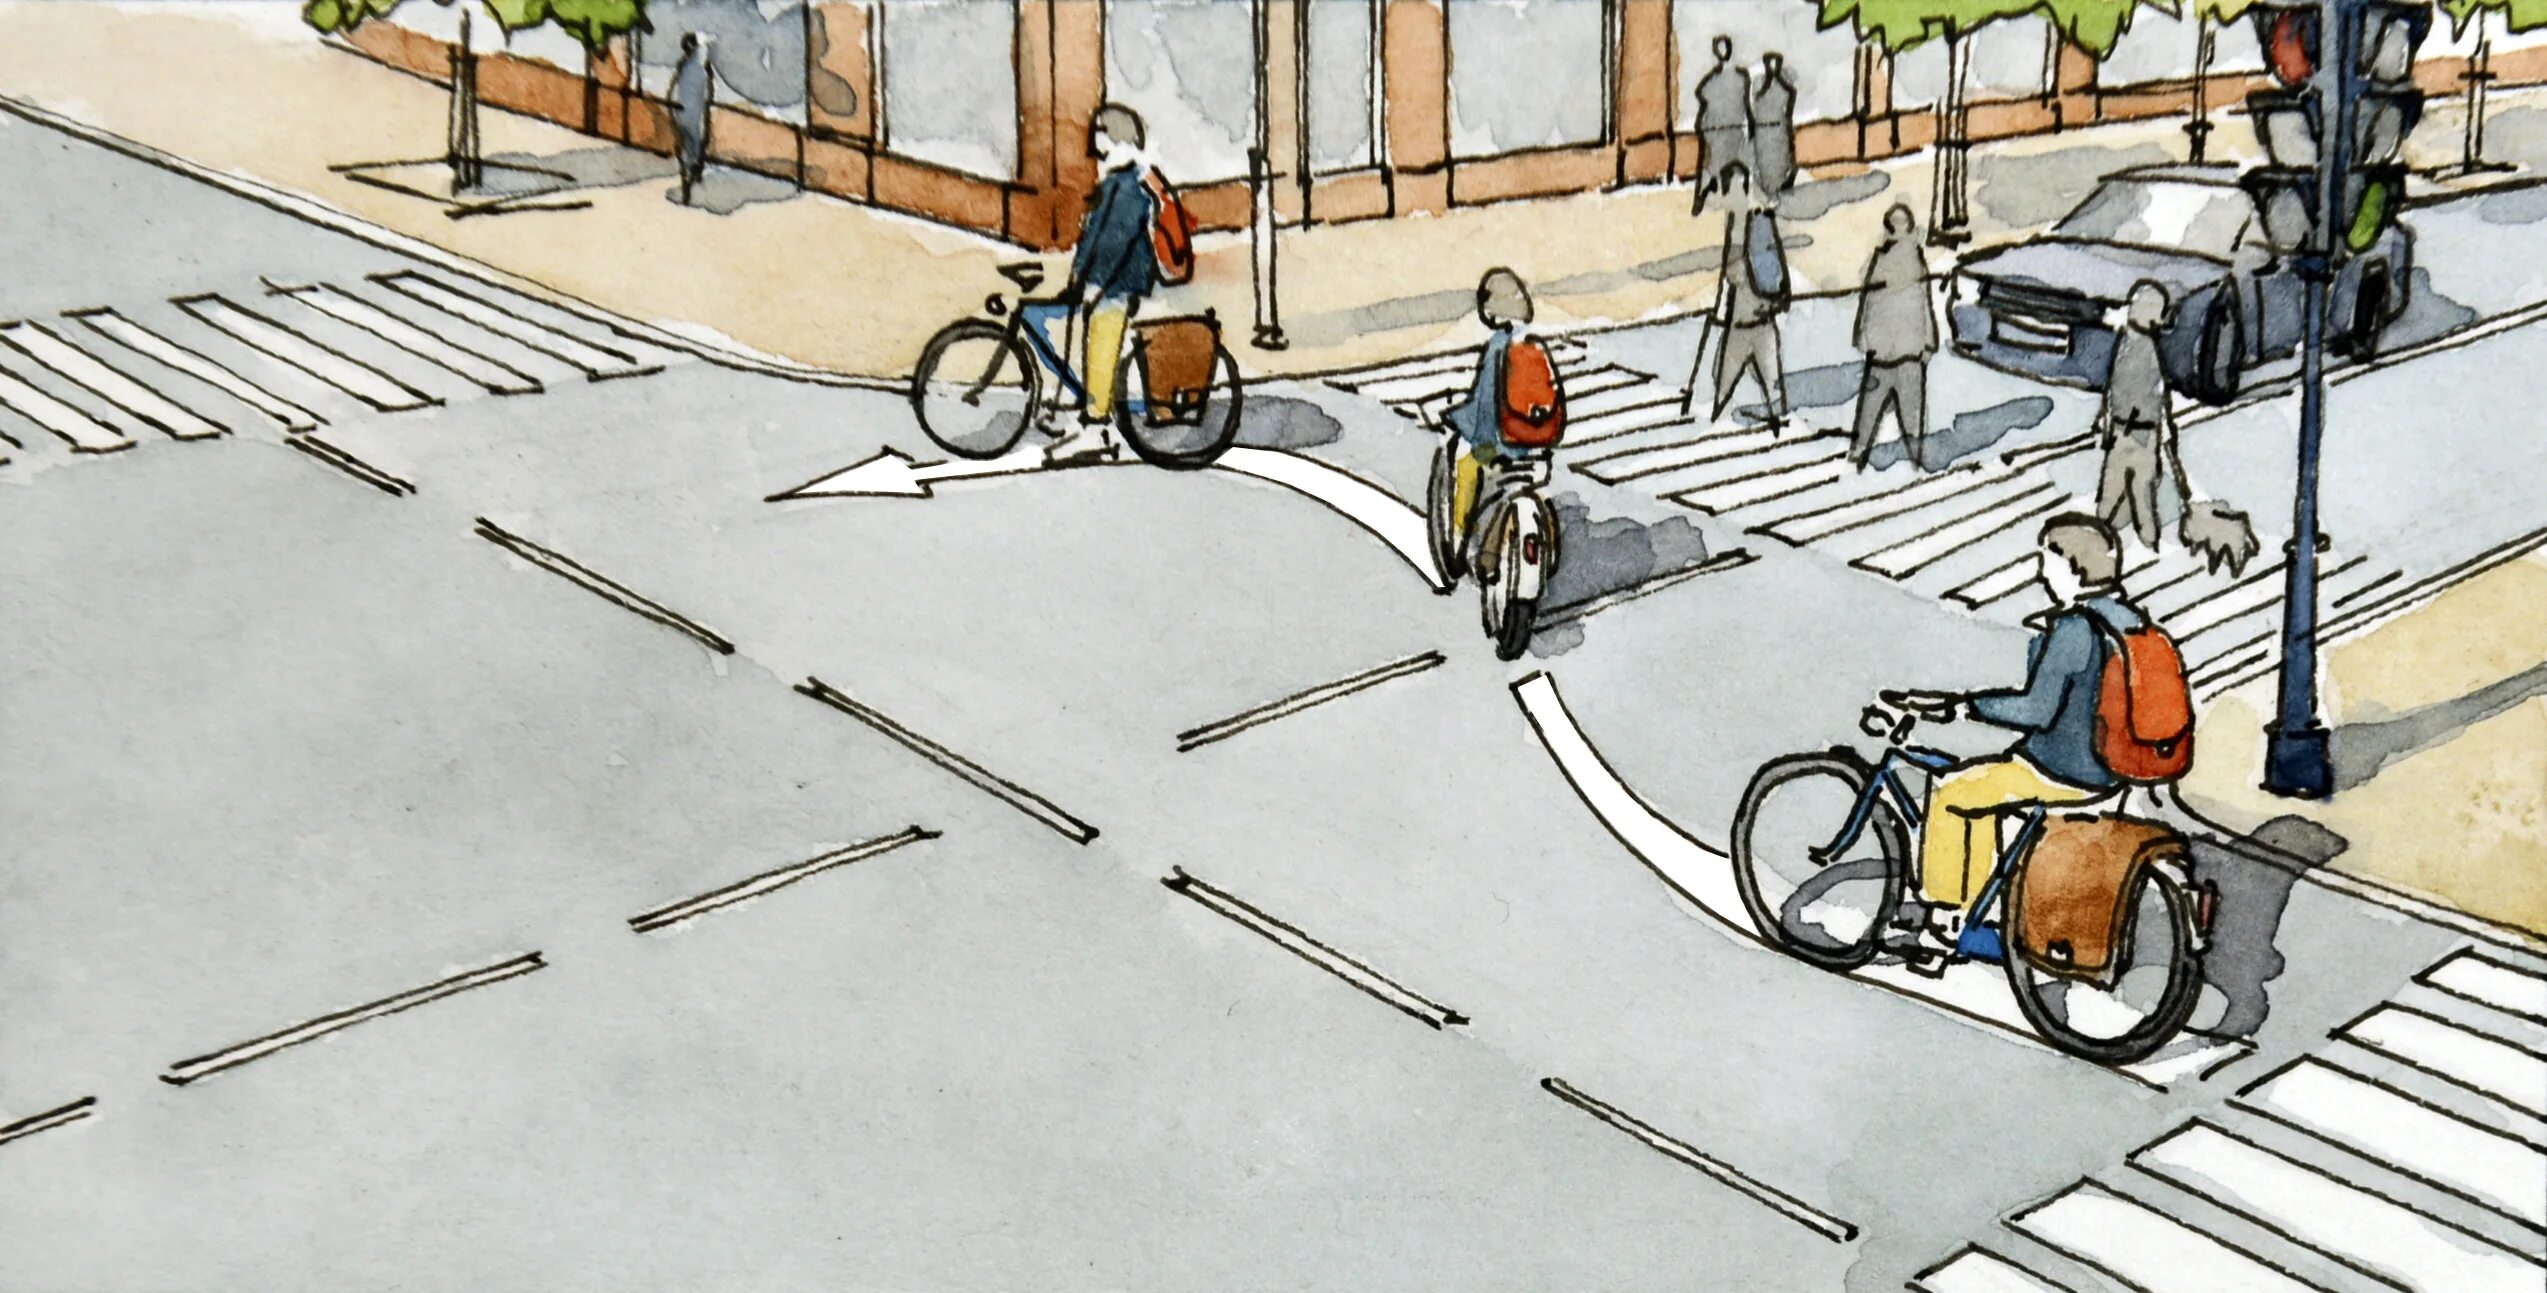 Тротуар рисунок. Пешеходная дорожка рисунок. Велосипедист едет по проезжей части. Тротуар картинка для детей.